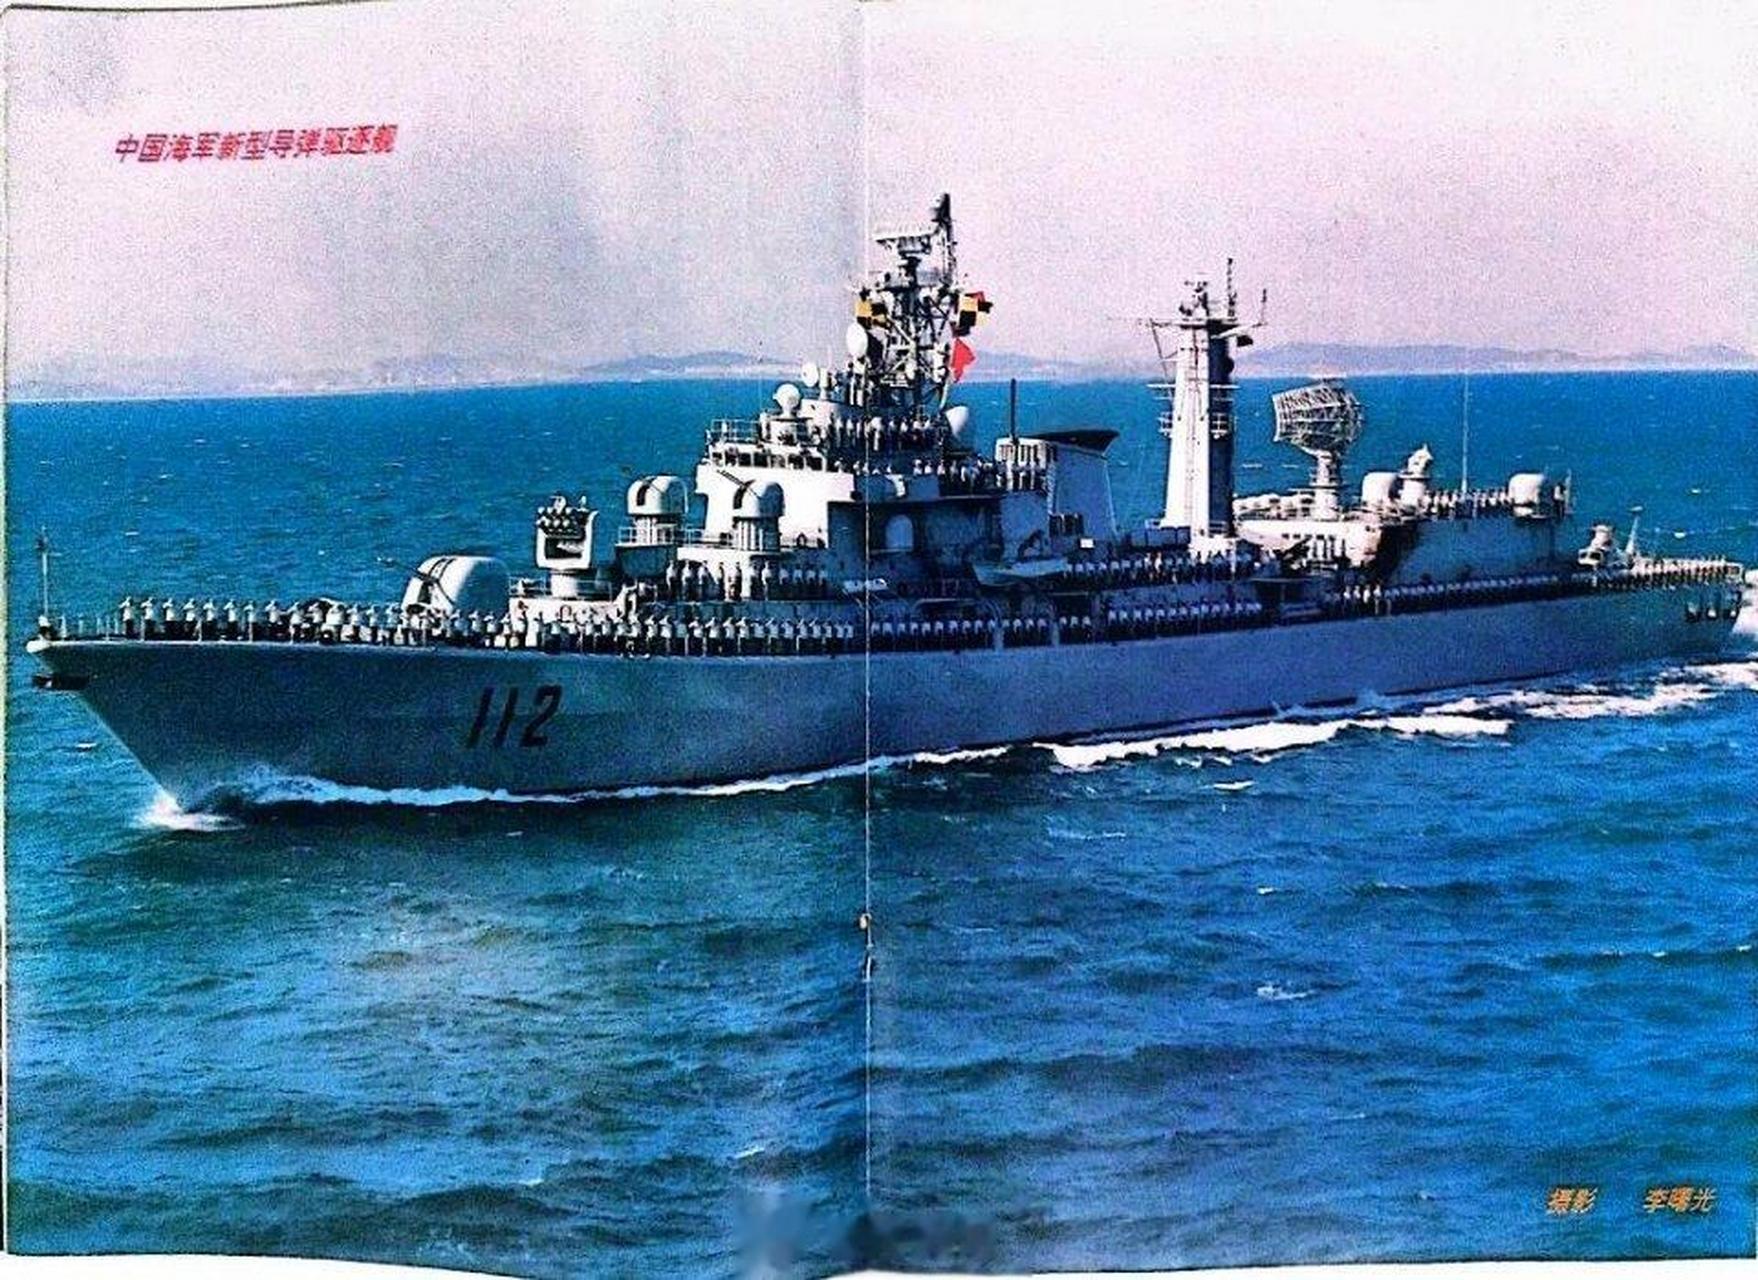 中华第一舰,112哈尔滨号80后军迷的老朋友,现在很少看到他的身影了